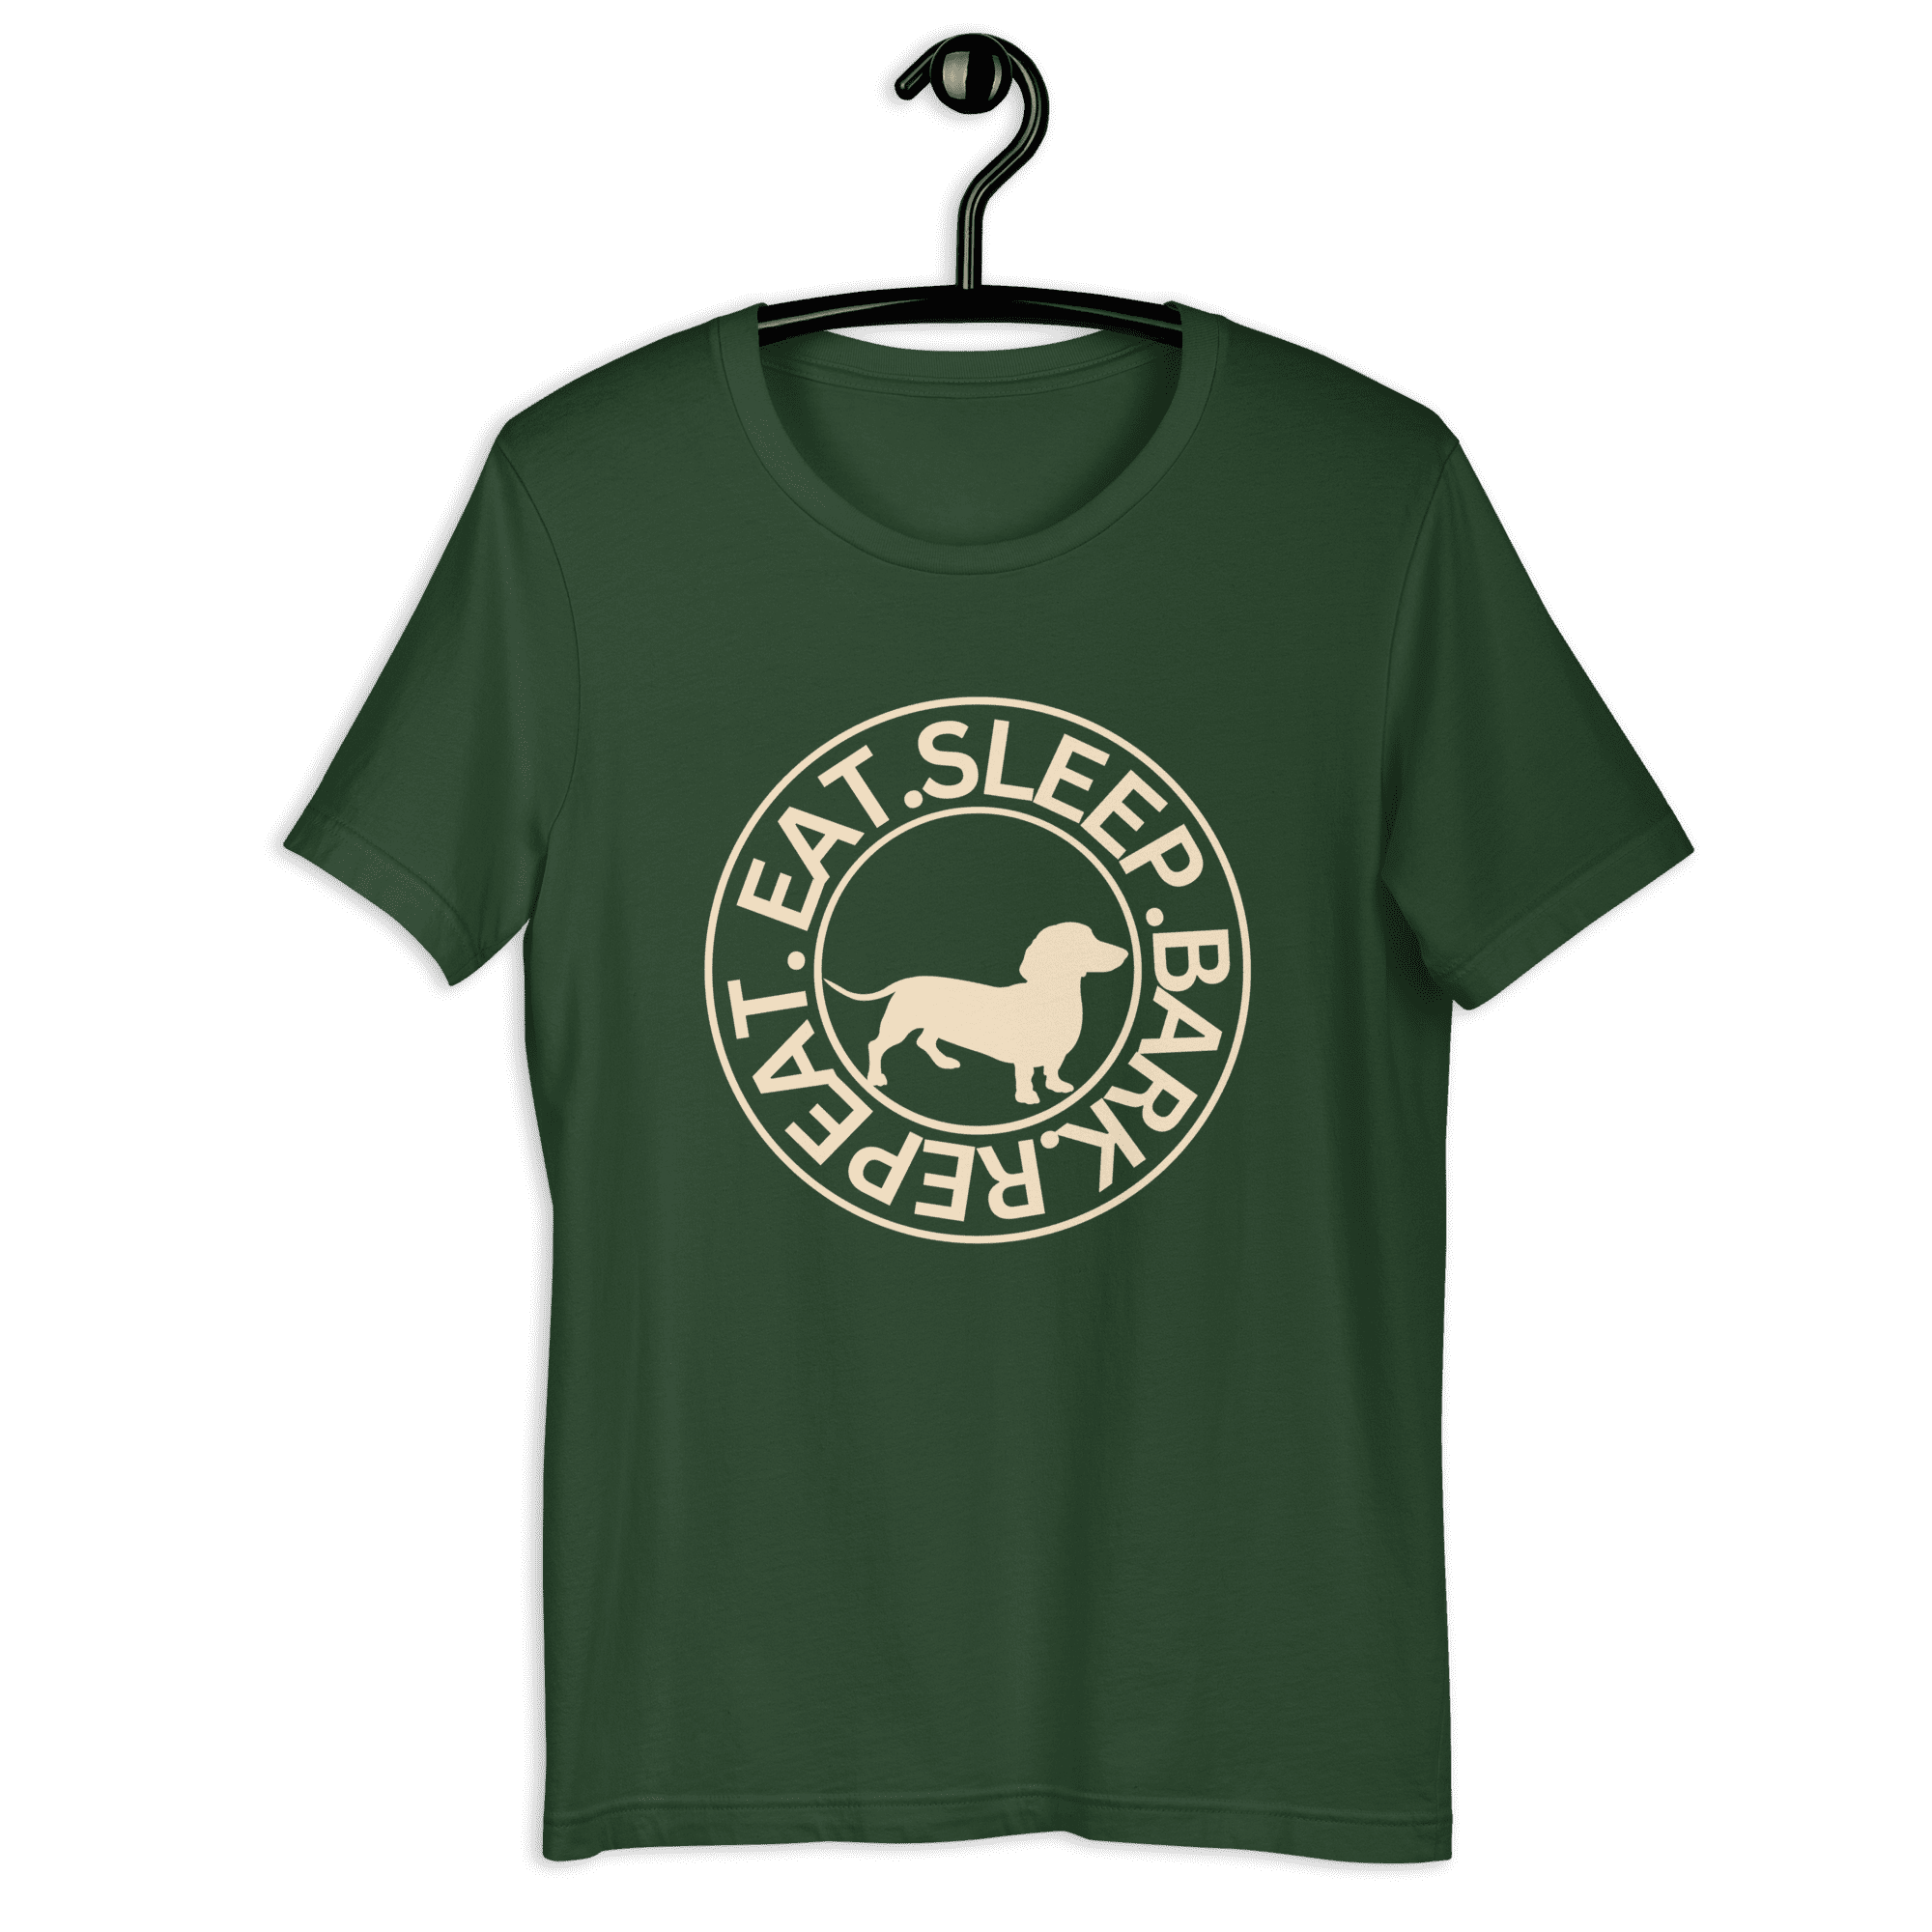 Eat Sleep Bark Repeat Transylvanian Hound (Erdélyi Kopó) Unisex T-Shirt. Green